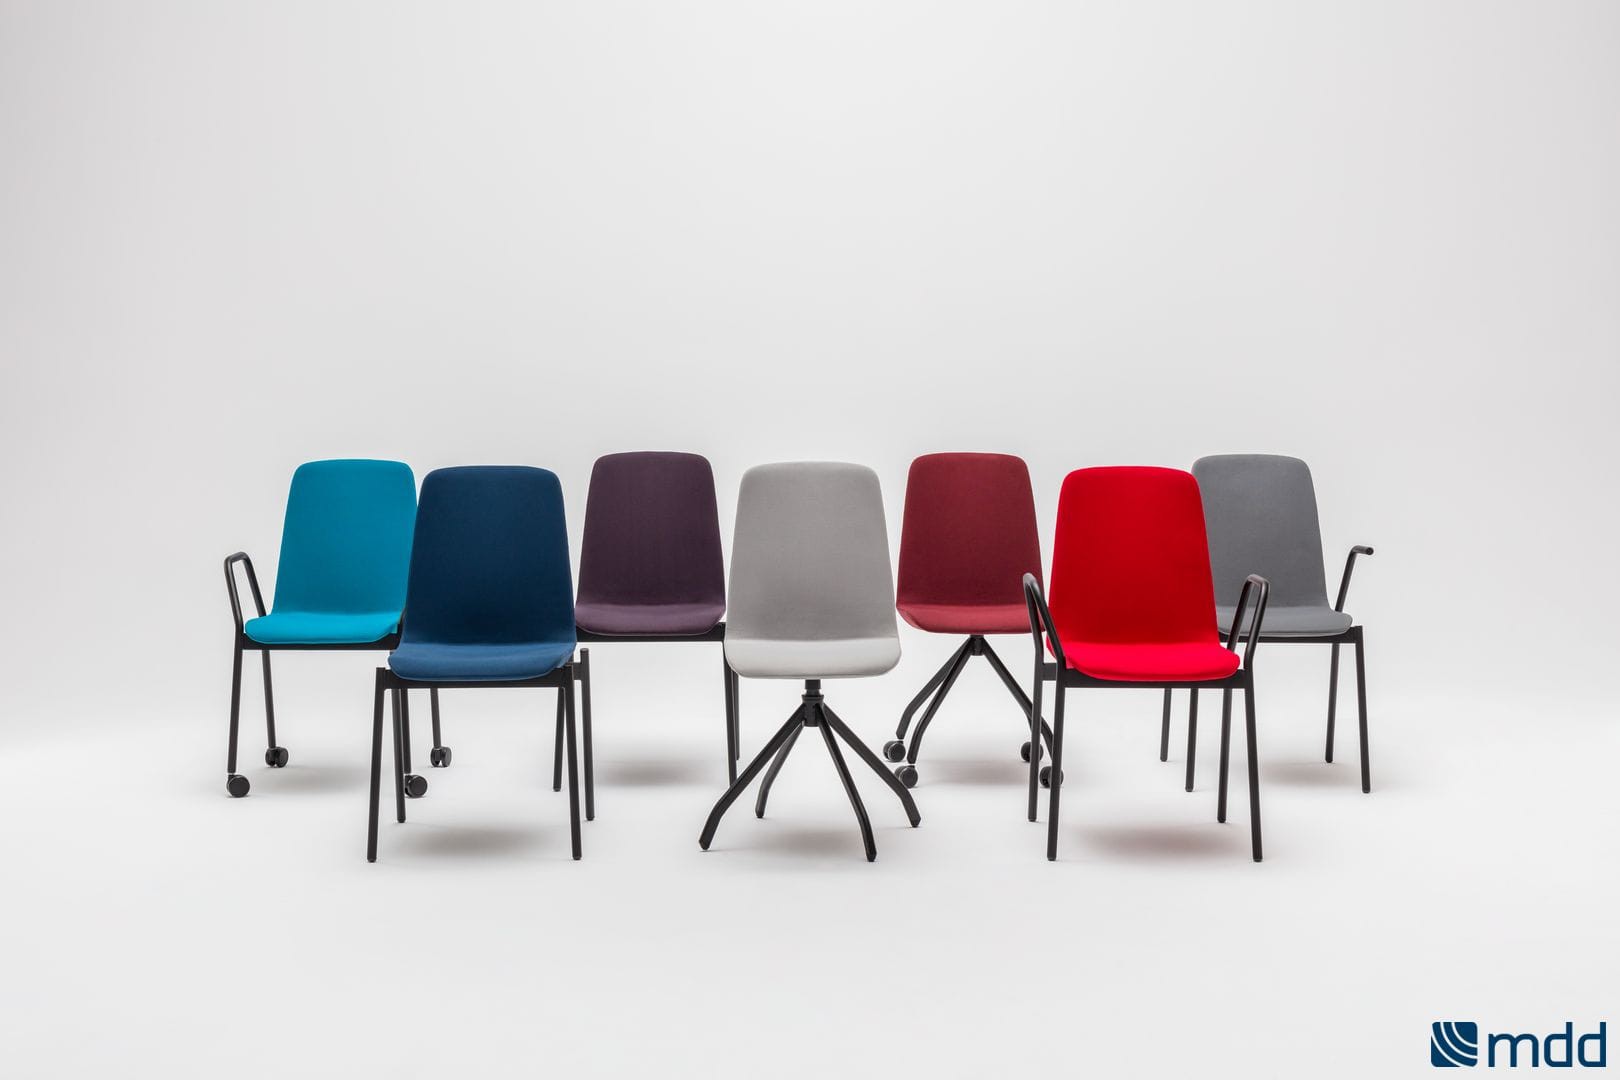 Krzesła Ultra z oferty firmy MDD. Projekt: Krystian Kowalski. Fot. MDD